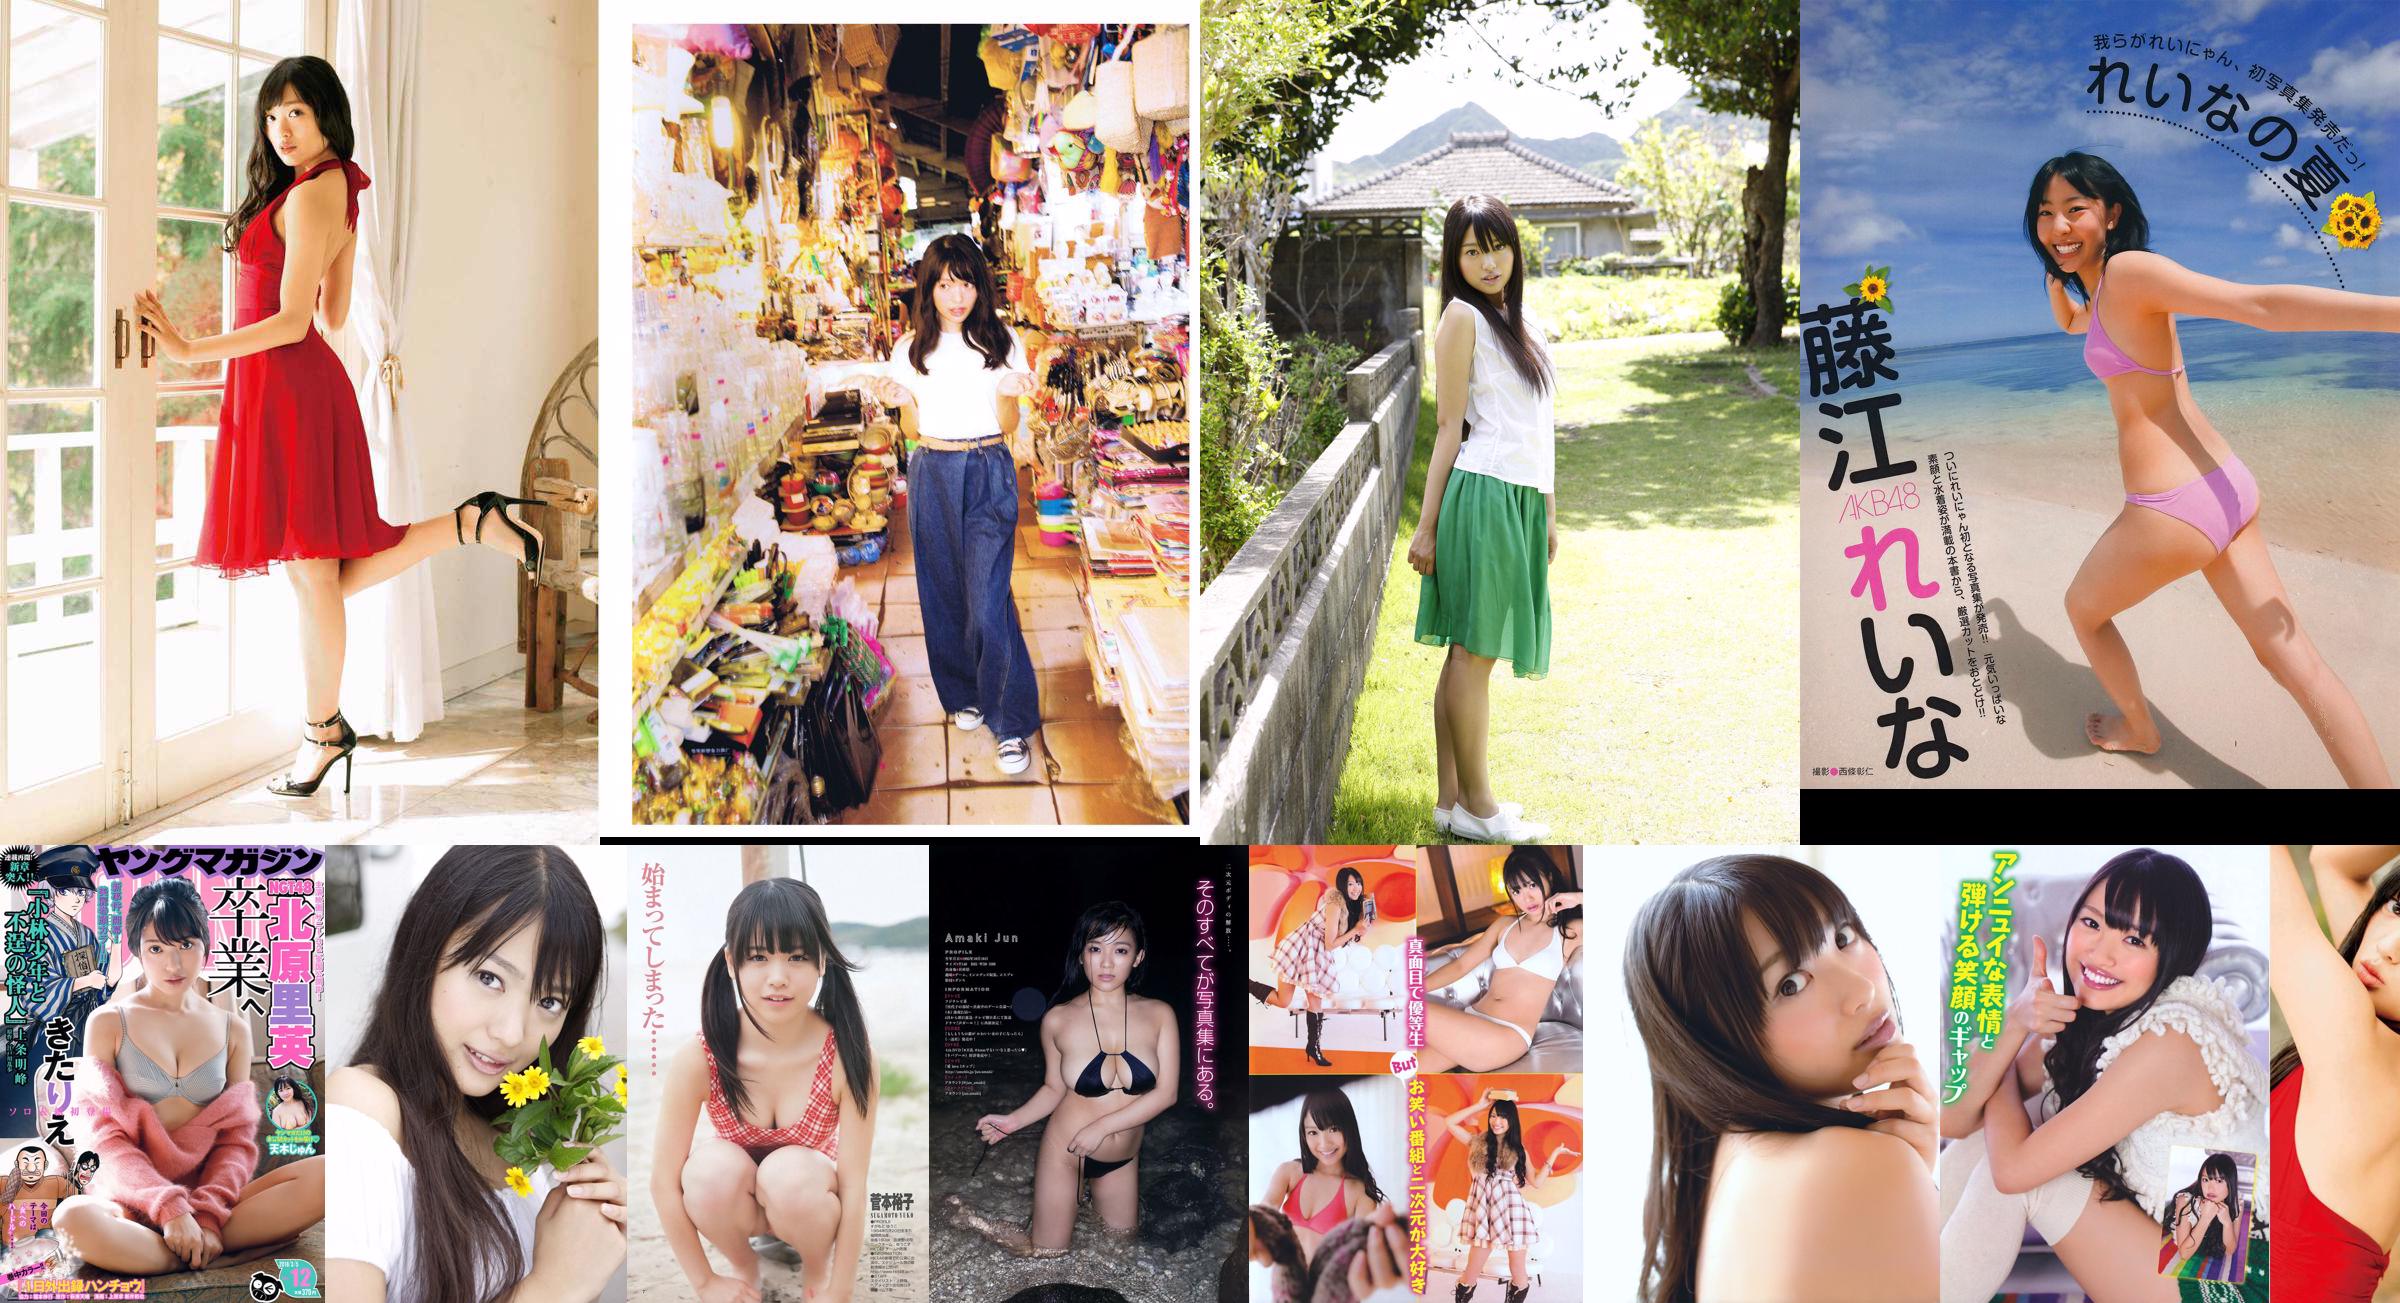 [EX Taishu] Rie Kitahara Serina KONAN Yumi Fujikoso 2011 Nr. 08 Foto No.8af504 Seite 4